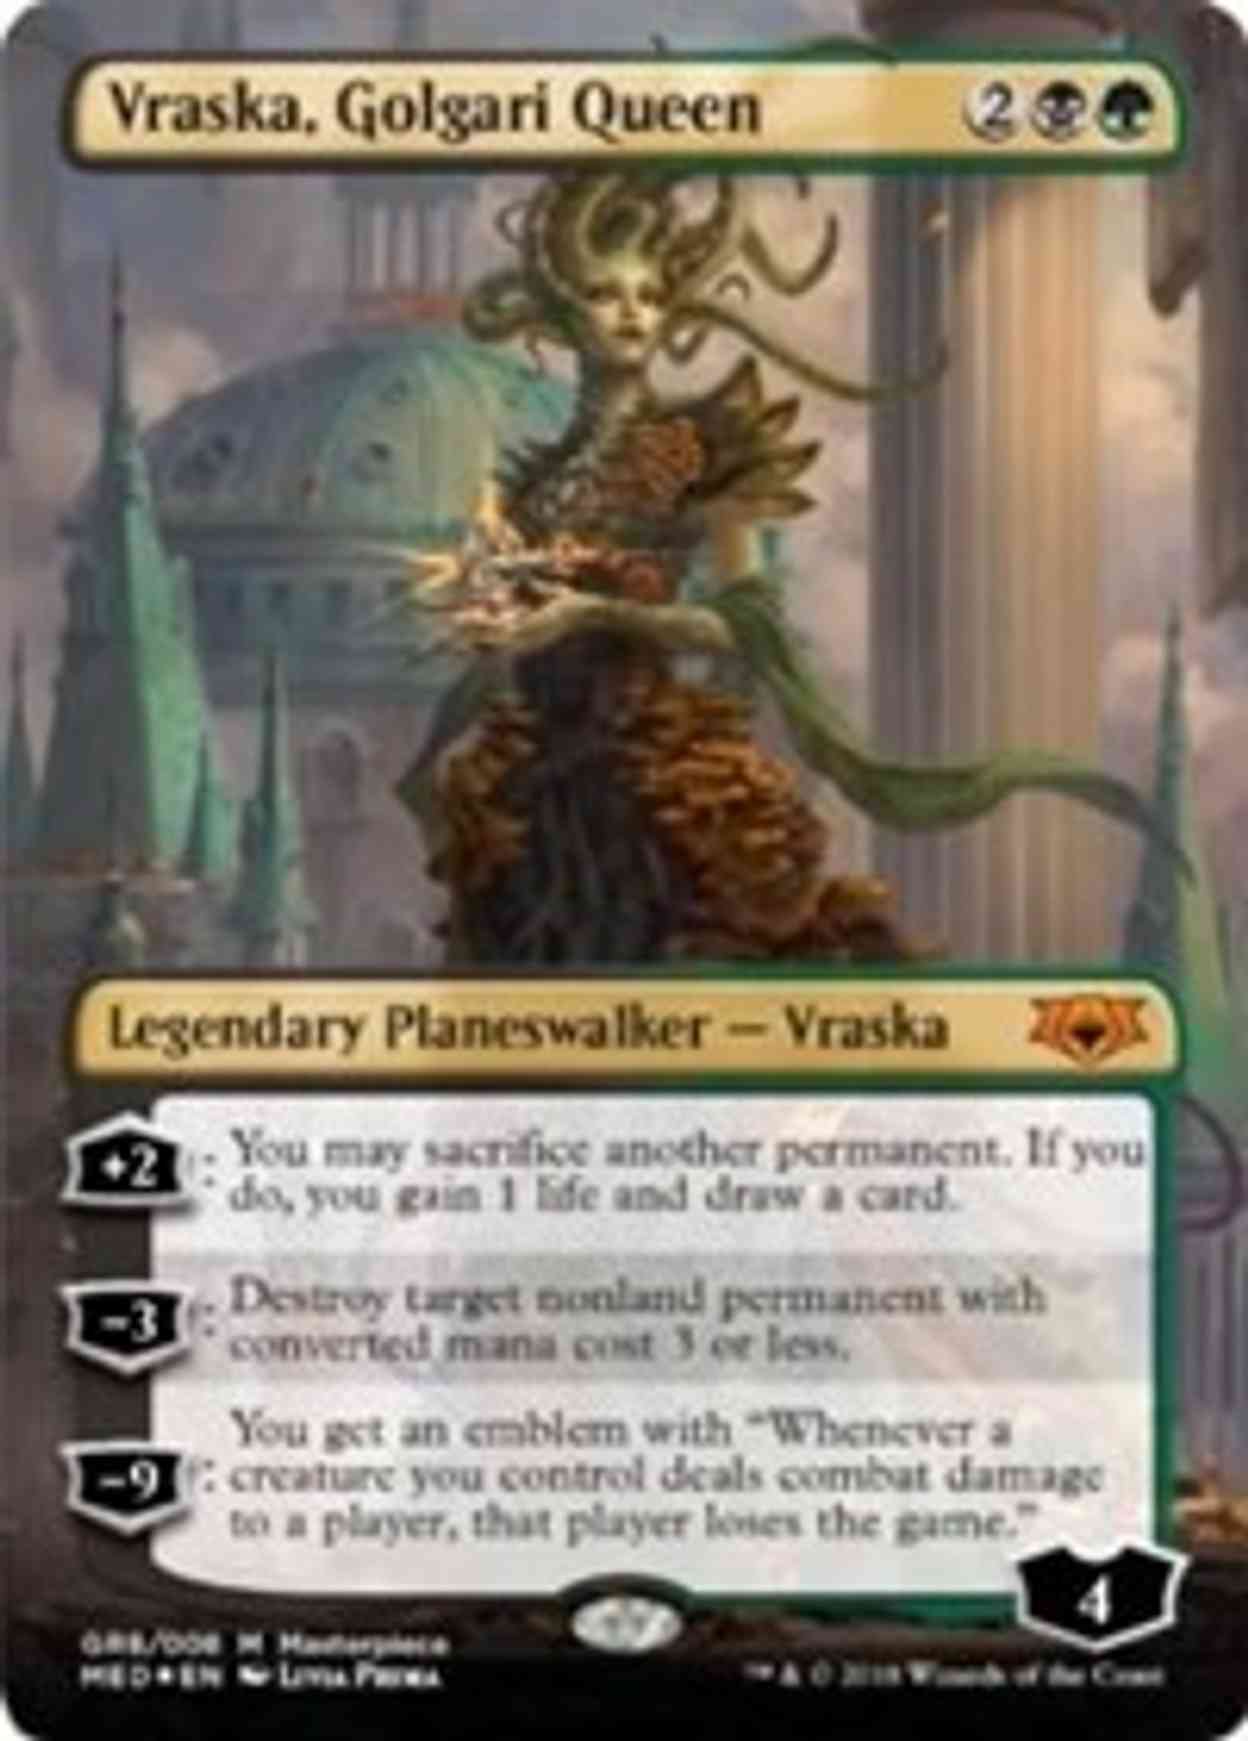 Vraska, Golgari Queen magic card front